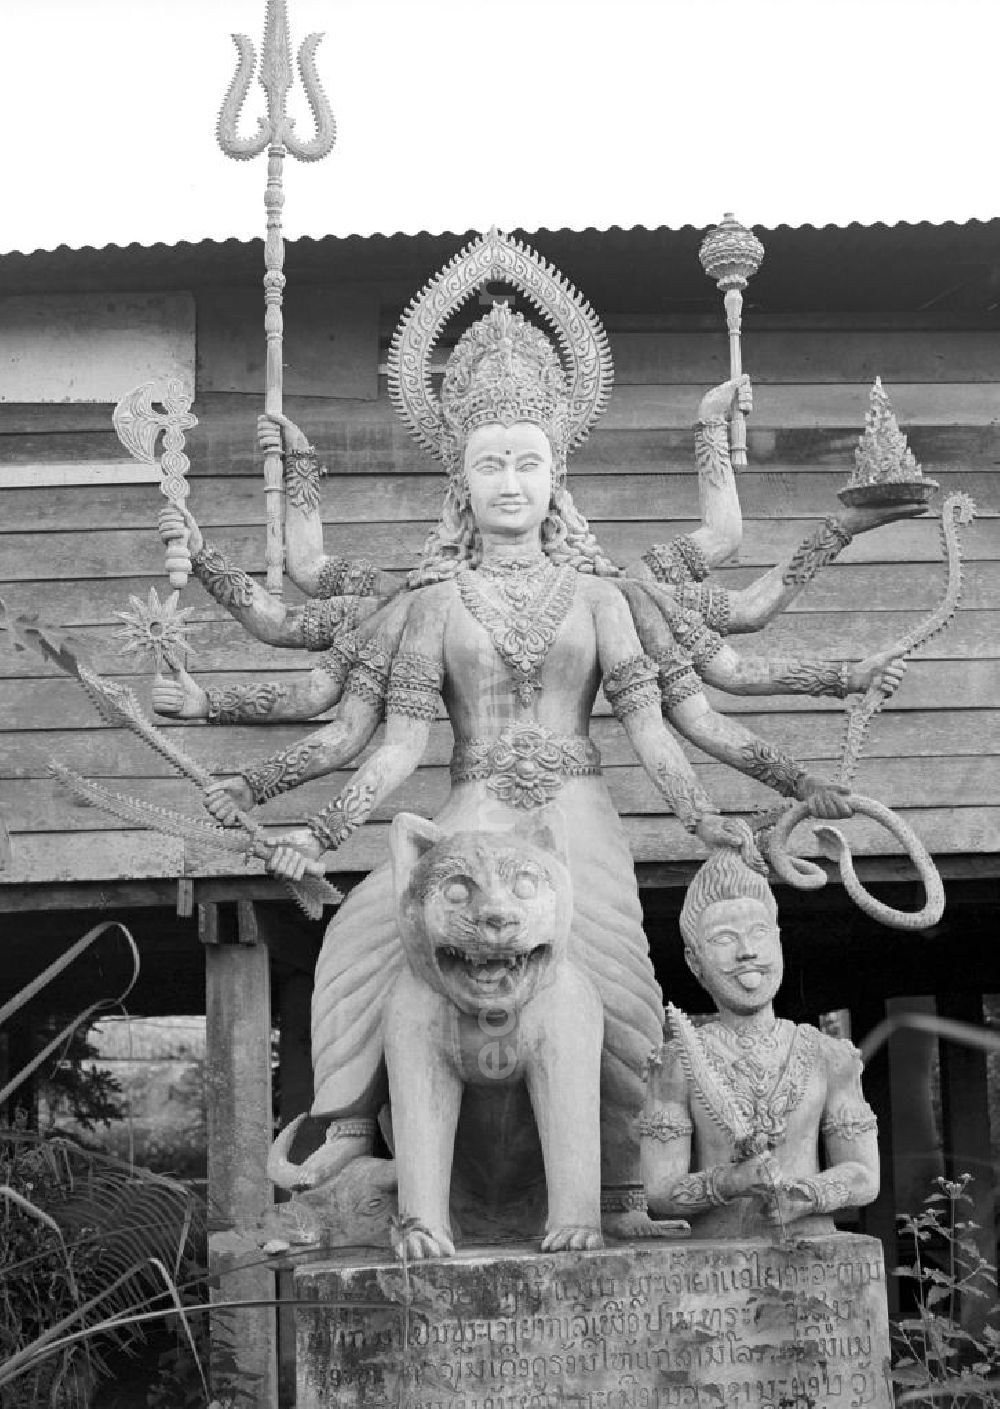 GDR image archive: Vientiane - Im Buddhapark Xieng Khuan stellen überlebensgroße Skulpturen aus Beton Figuren aus der hinduistischen und buddhistischen Mythologie dar. Der etwa 25 km südöstlich von Vientiane am Ufer des Mekong gelegene Park war in den 5